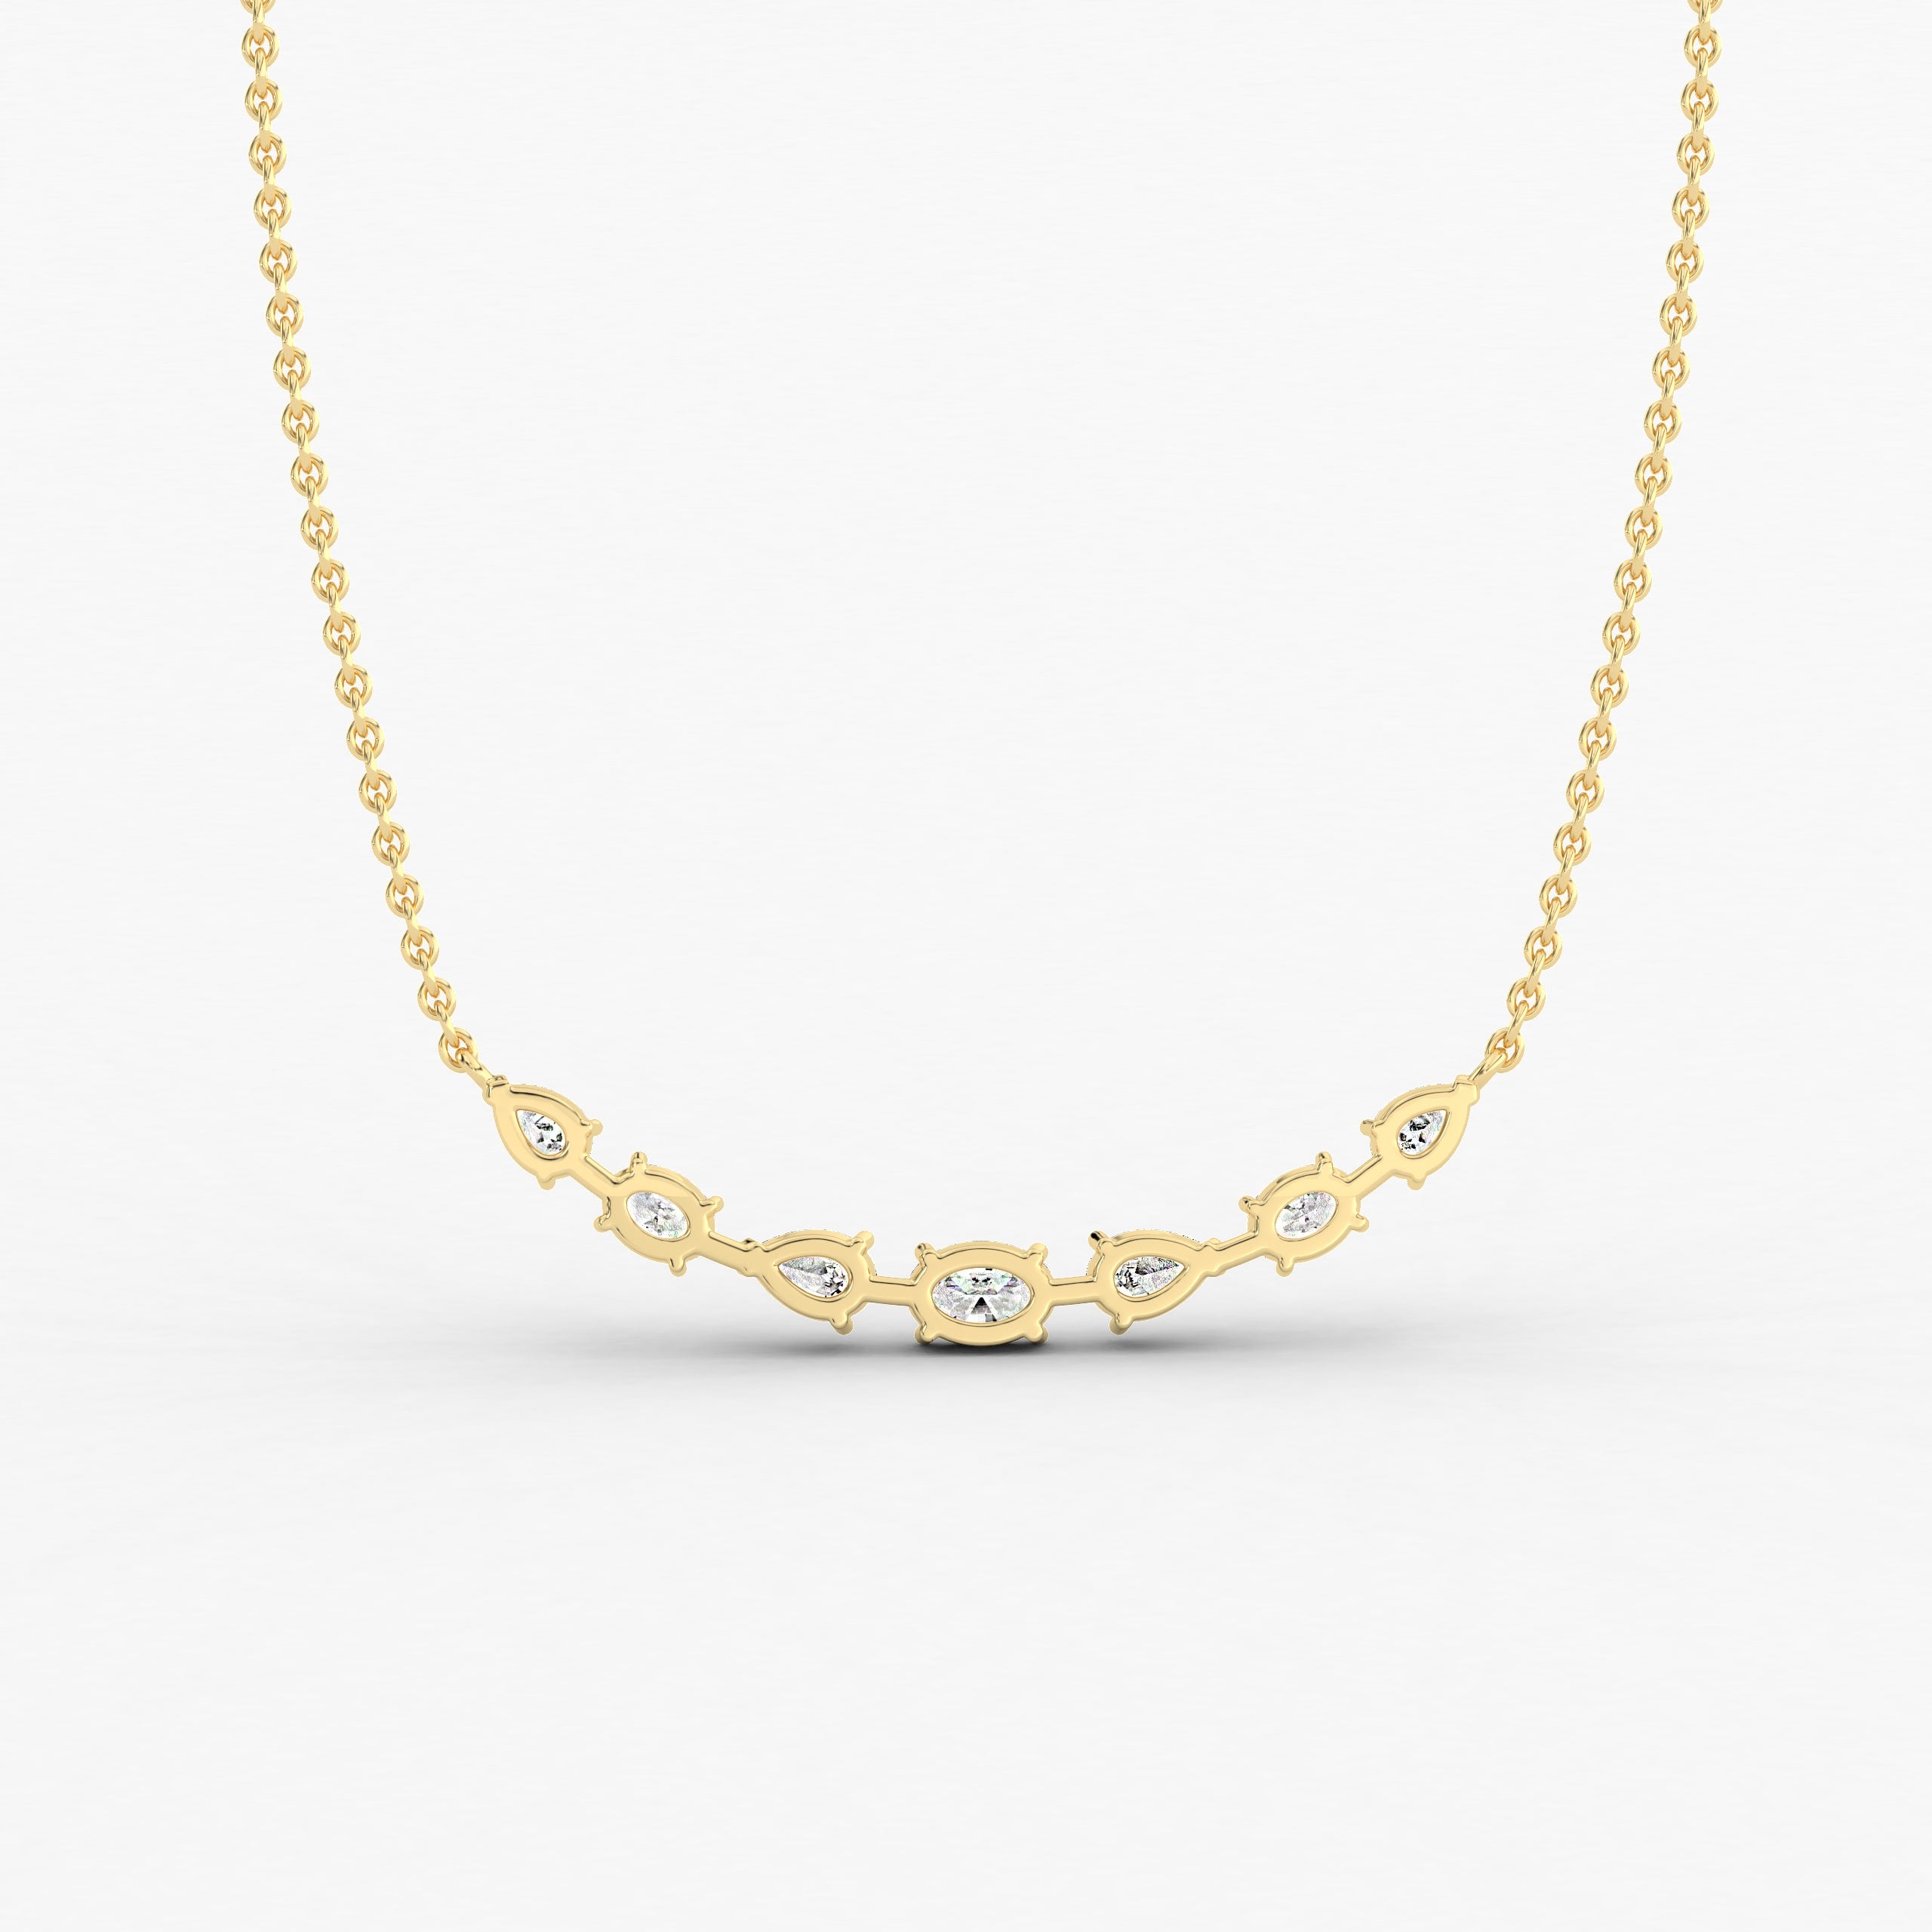 Fancy shape diamond pendant chain in yellow gold